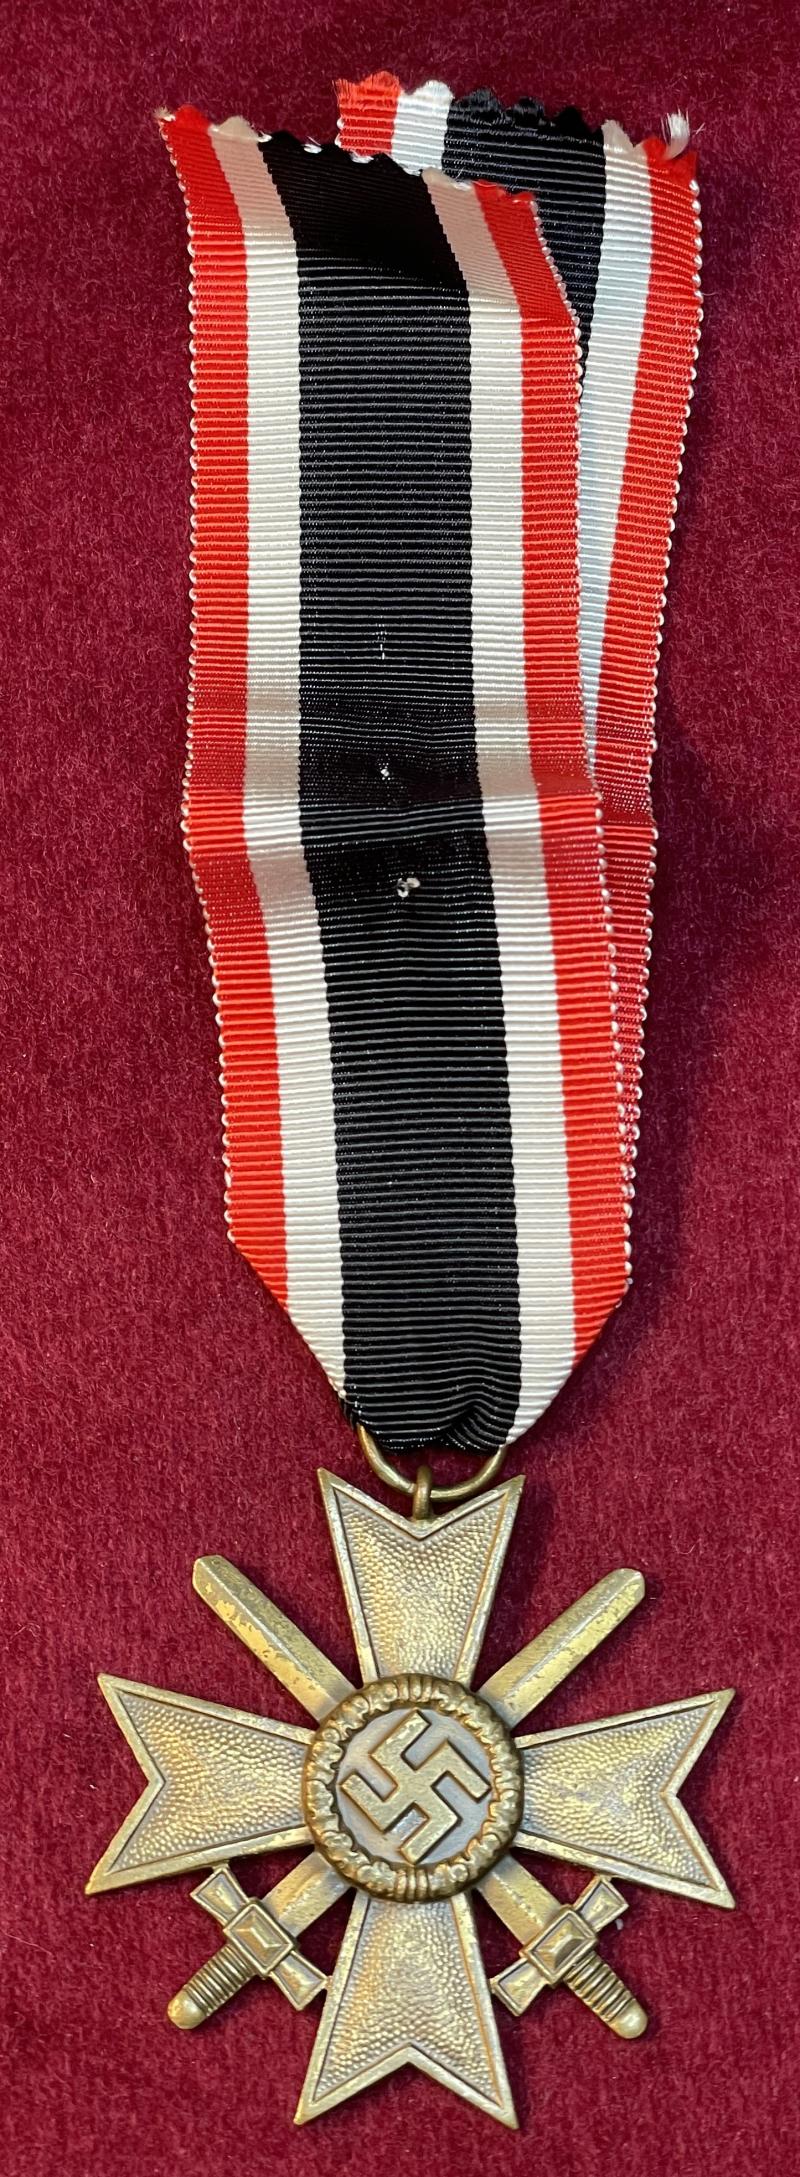 3rd Reich Kriegsverdienstkreuz mit Schwertern 2. Klasse, 1939